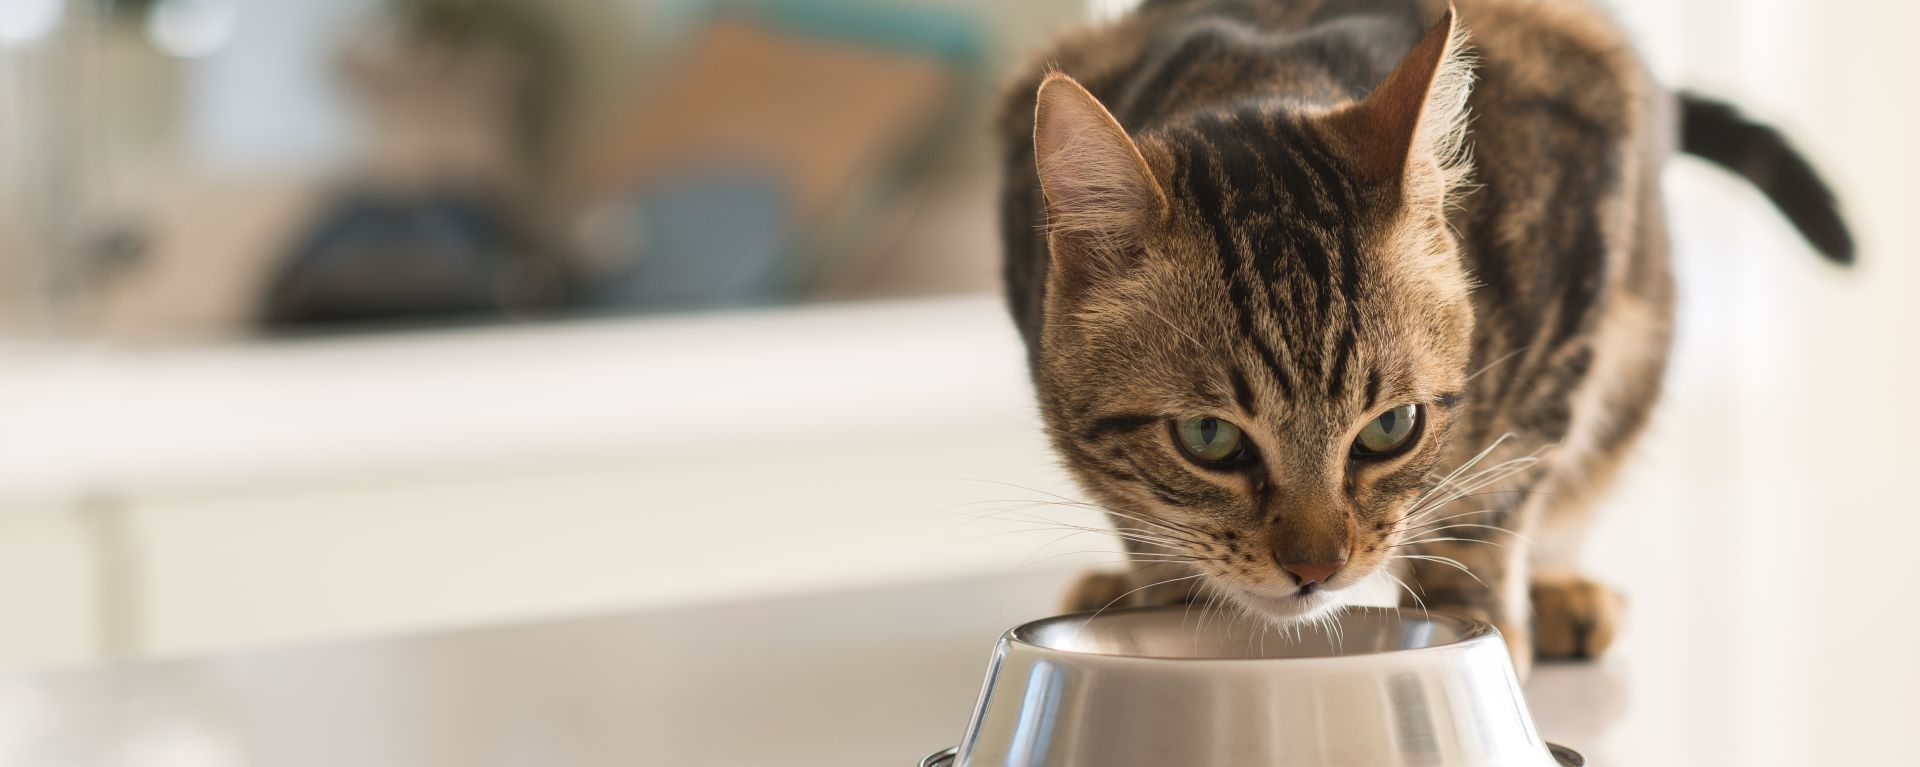 Язва желудка у кошки - симптомы, лечение, чем кормить